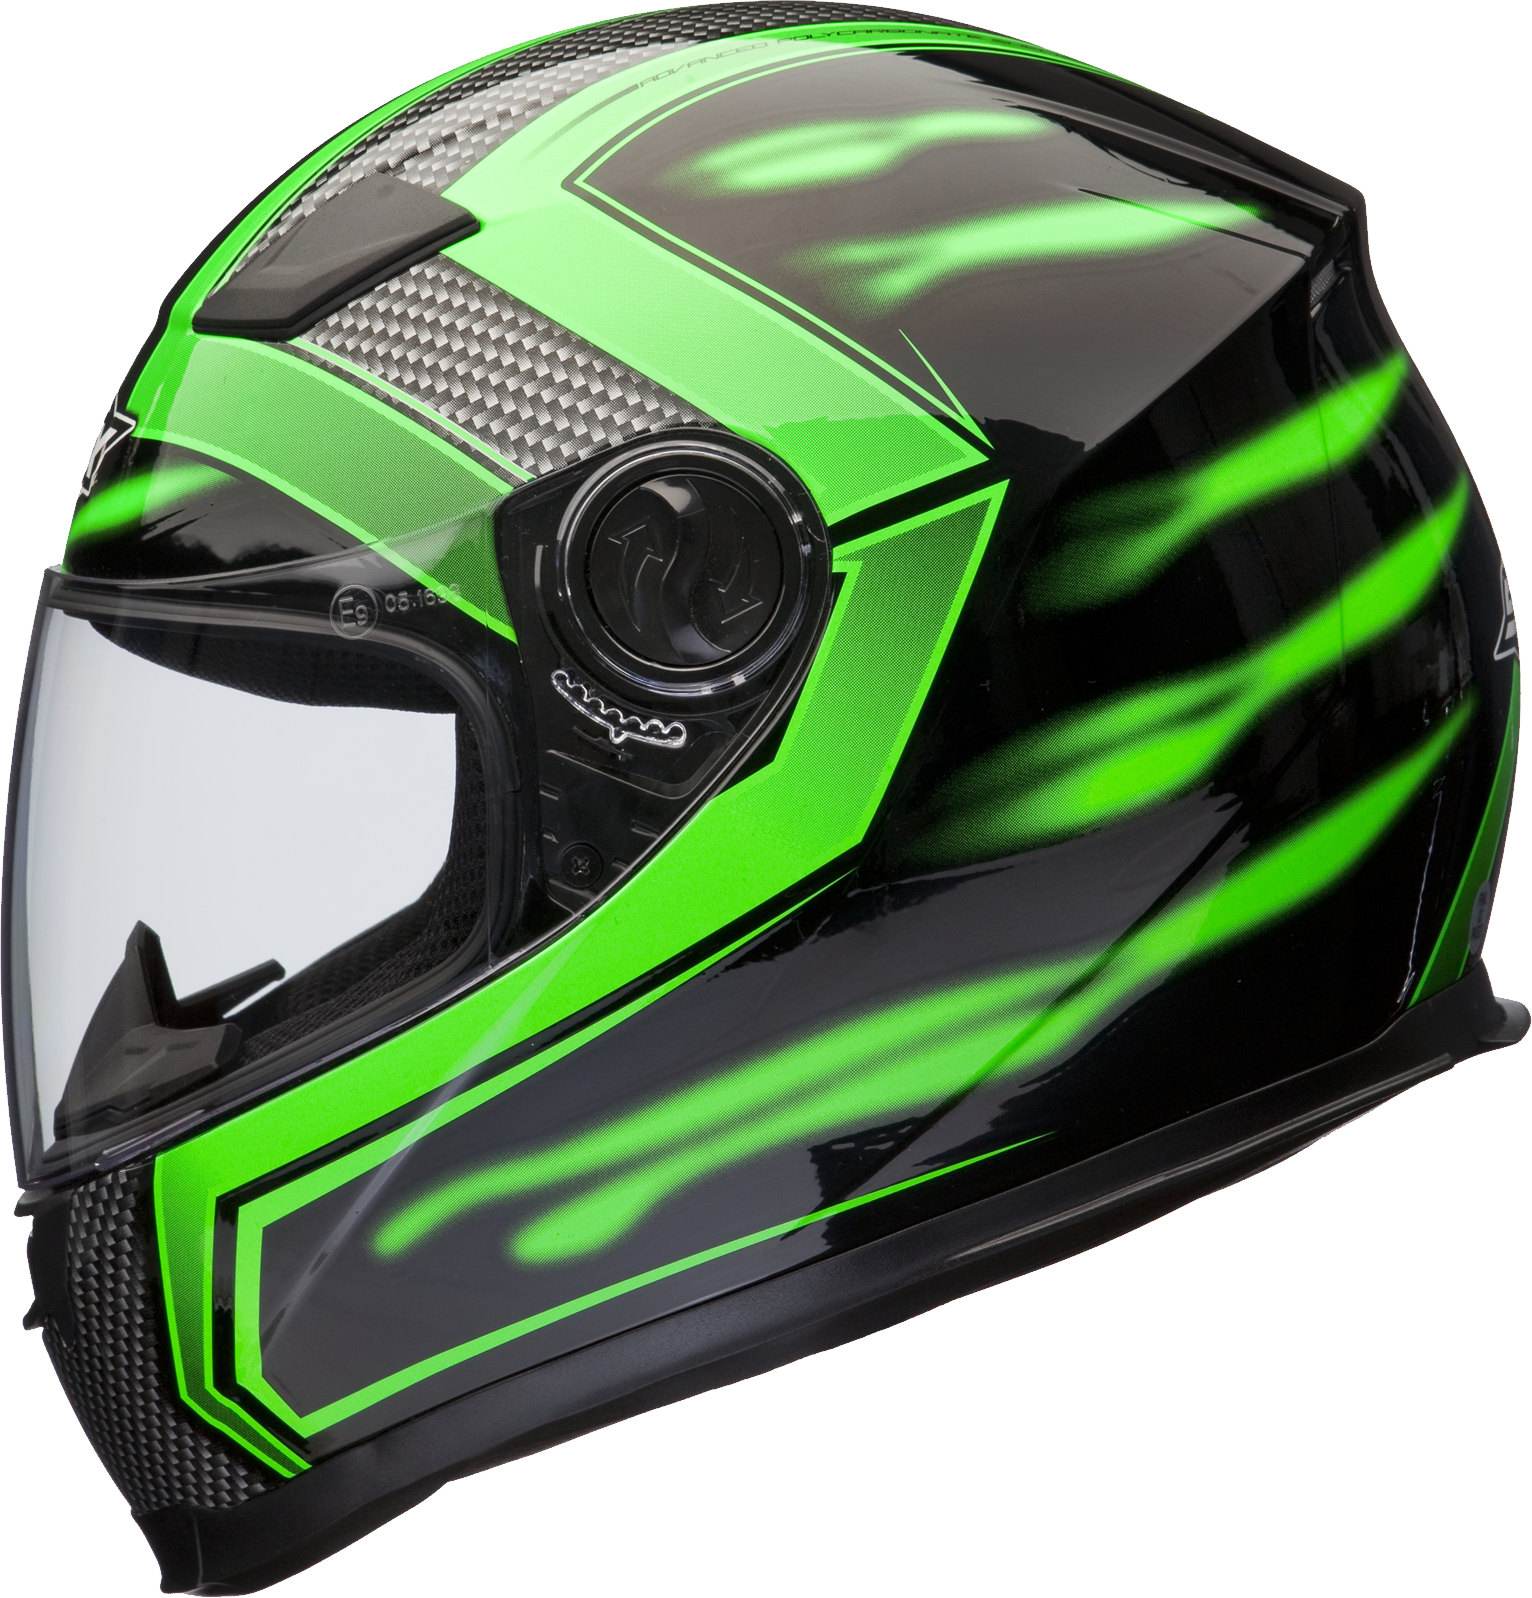 Motorcycle Helmet Png Image, Moto Helmet - Motorcycle Helmet, Transparent background PNG HD thumbnail